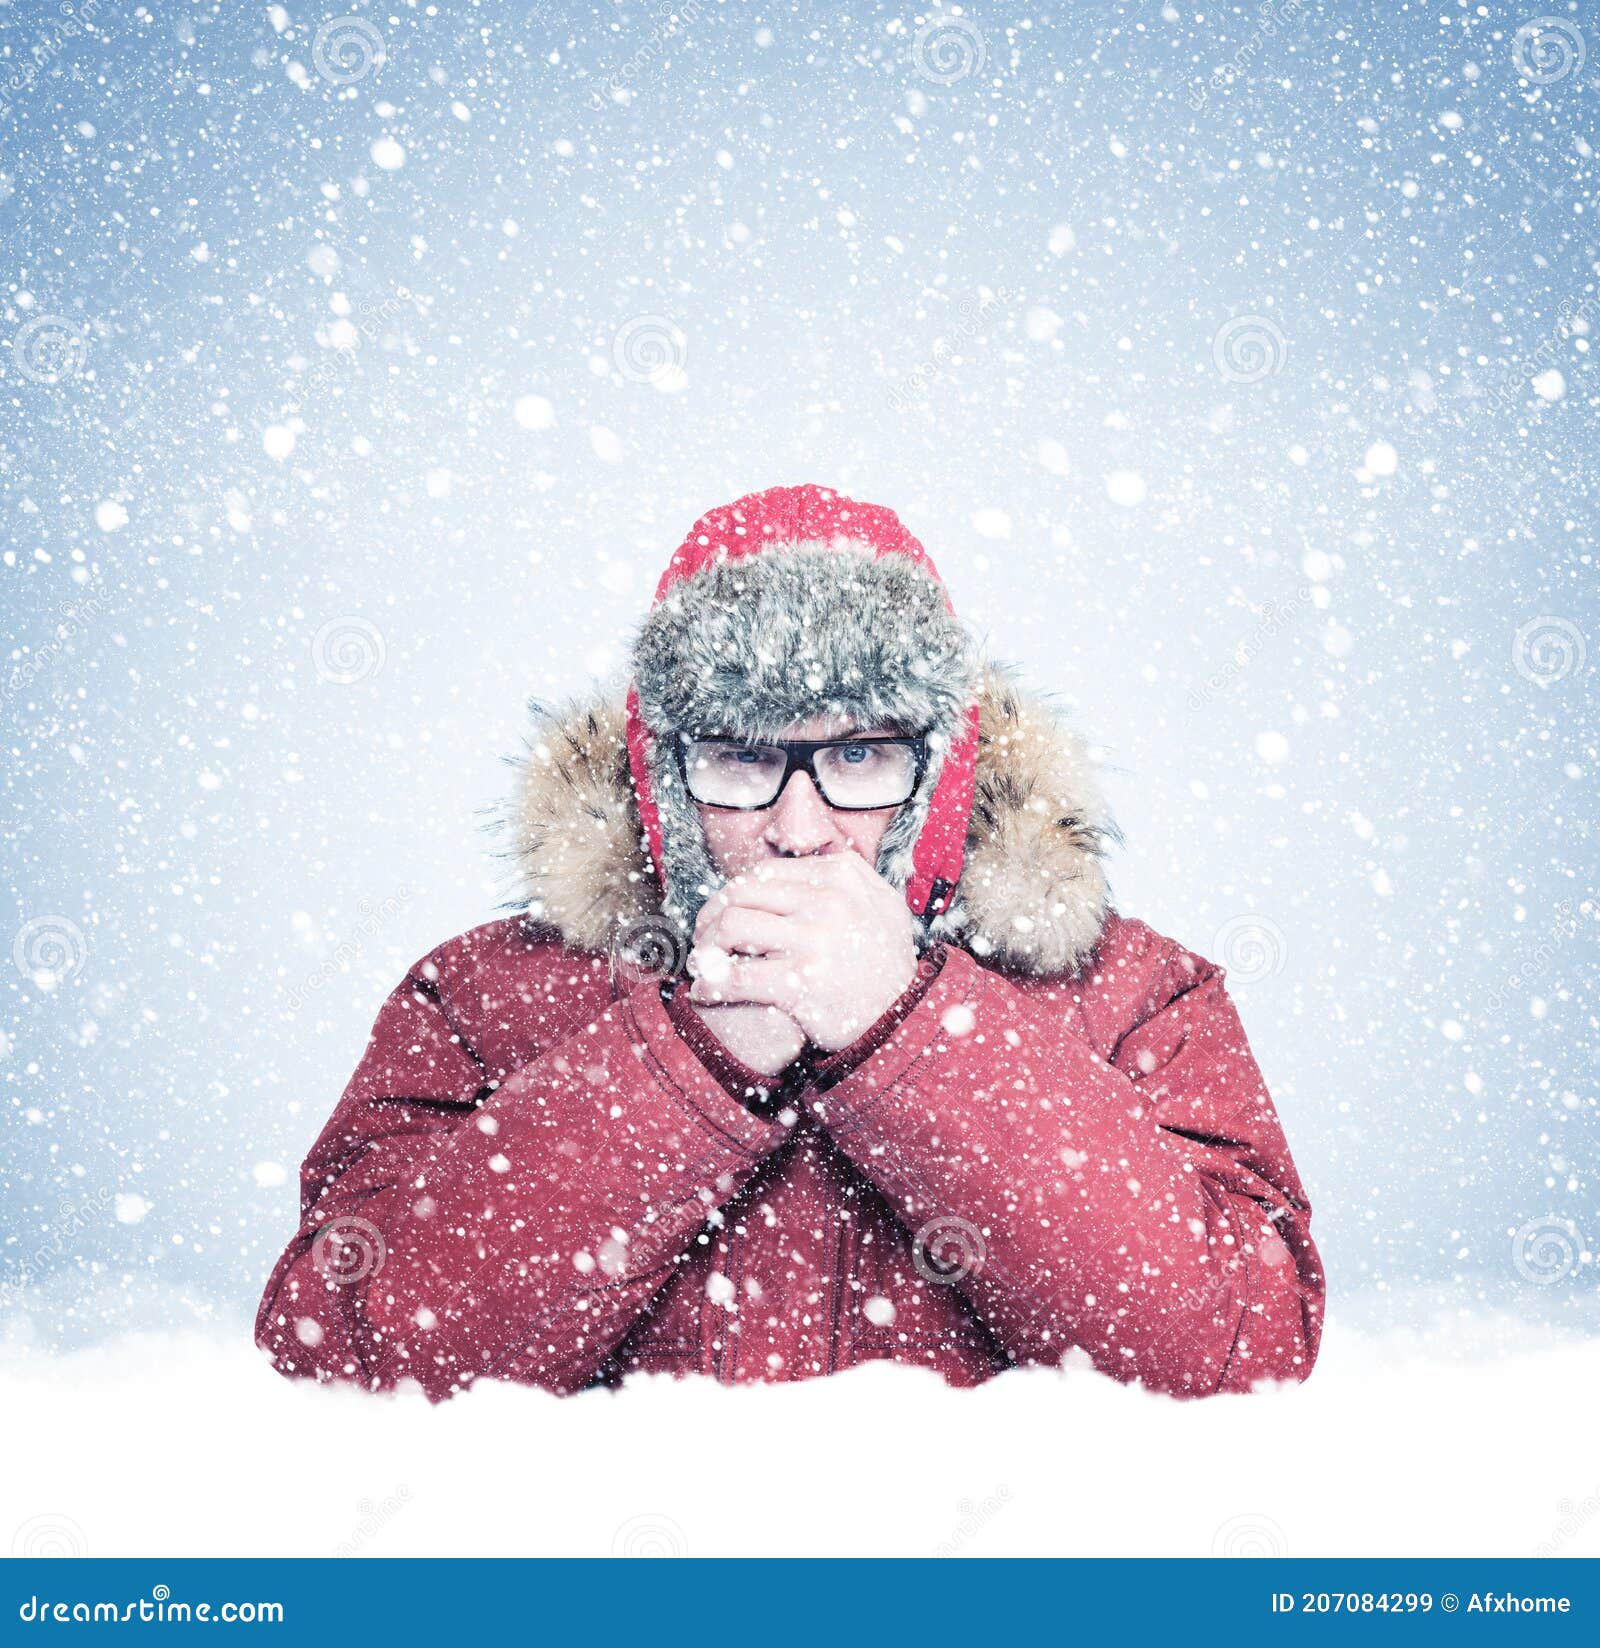 Un Hombre Congelado Con Gafas Y Ropa De Invierno Parado En La Nieve Y Le Da  Las Manos Alrededor De La Nieve Una Ventisca Imagen de archivo - Imagen de  inferior, fondo